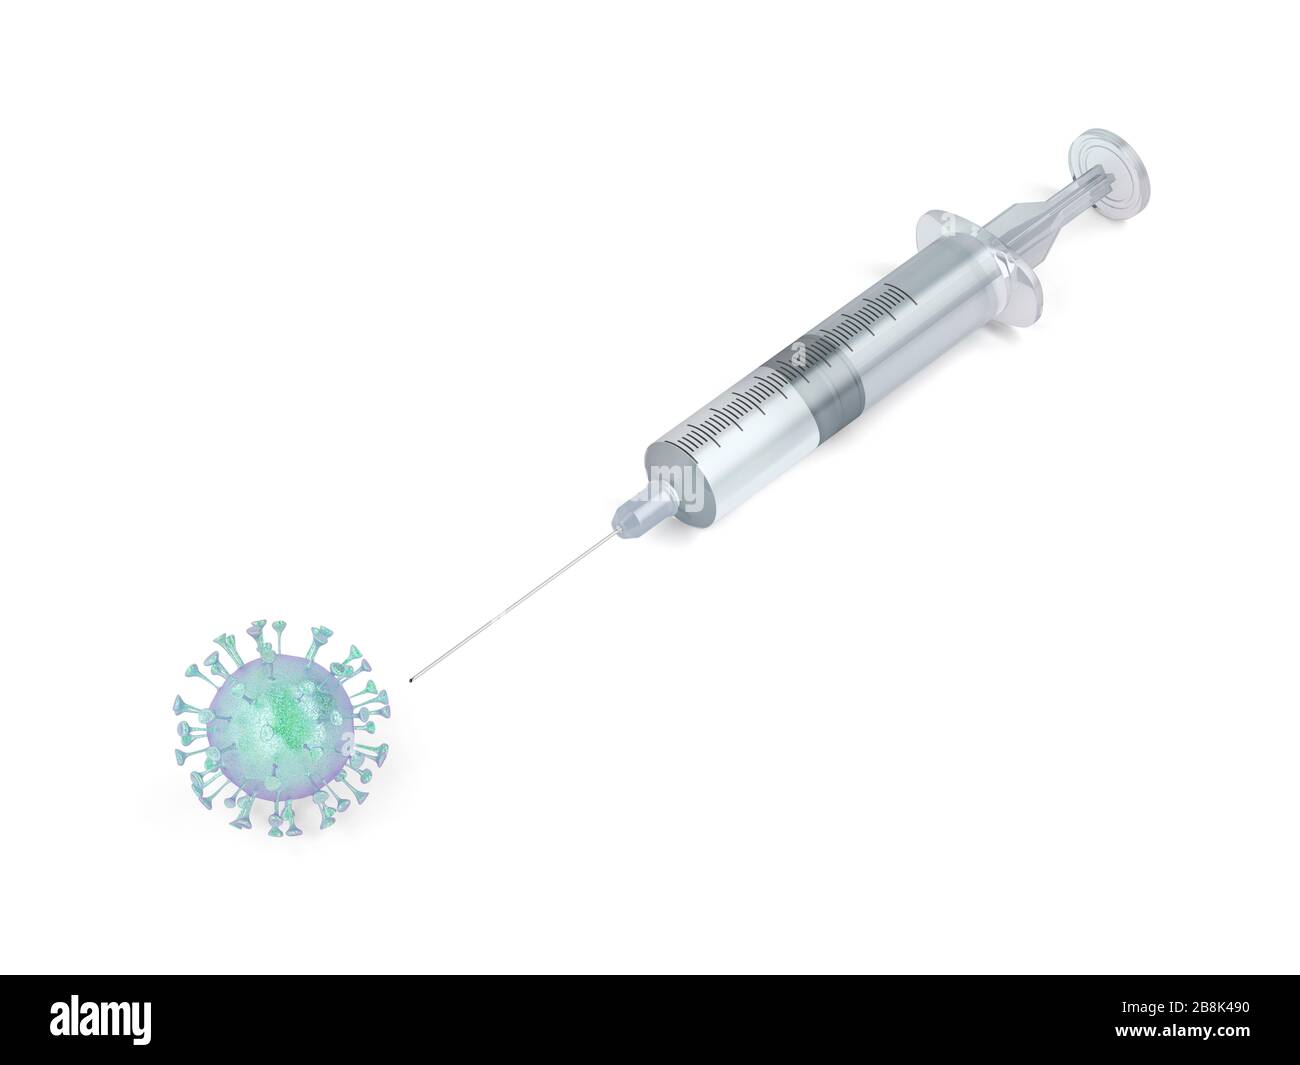 Ilustración 3D con virus y jeringa. Imagen conceptual de la enfermedad coronavirus pandemia de COVID-19. Foto de stock